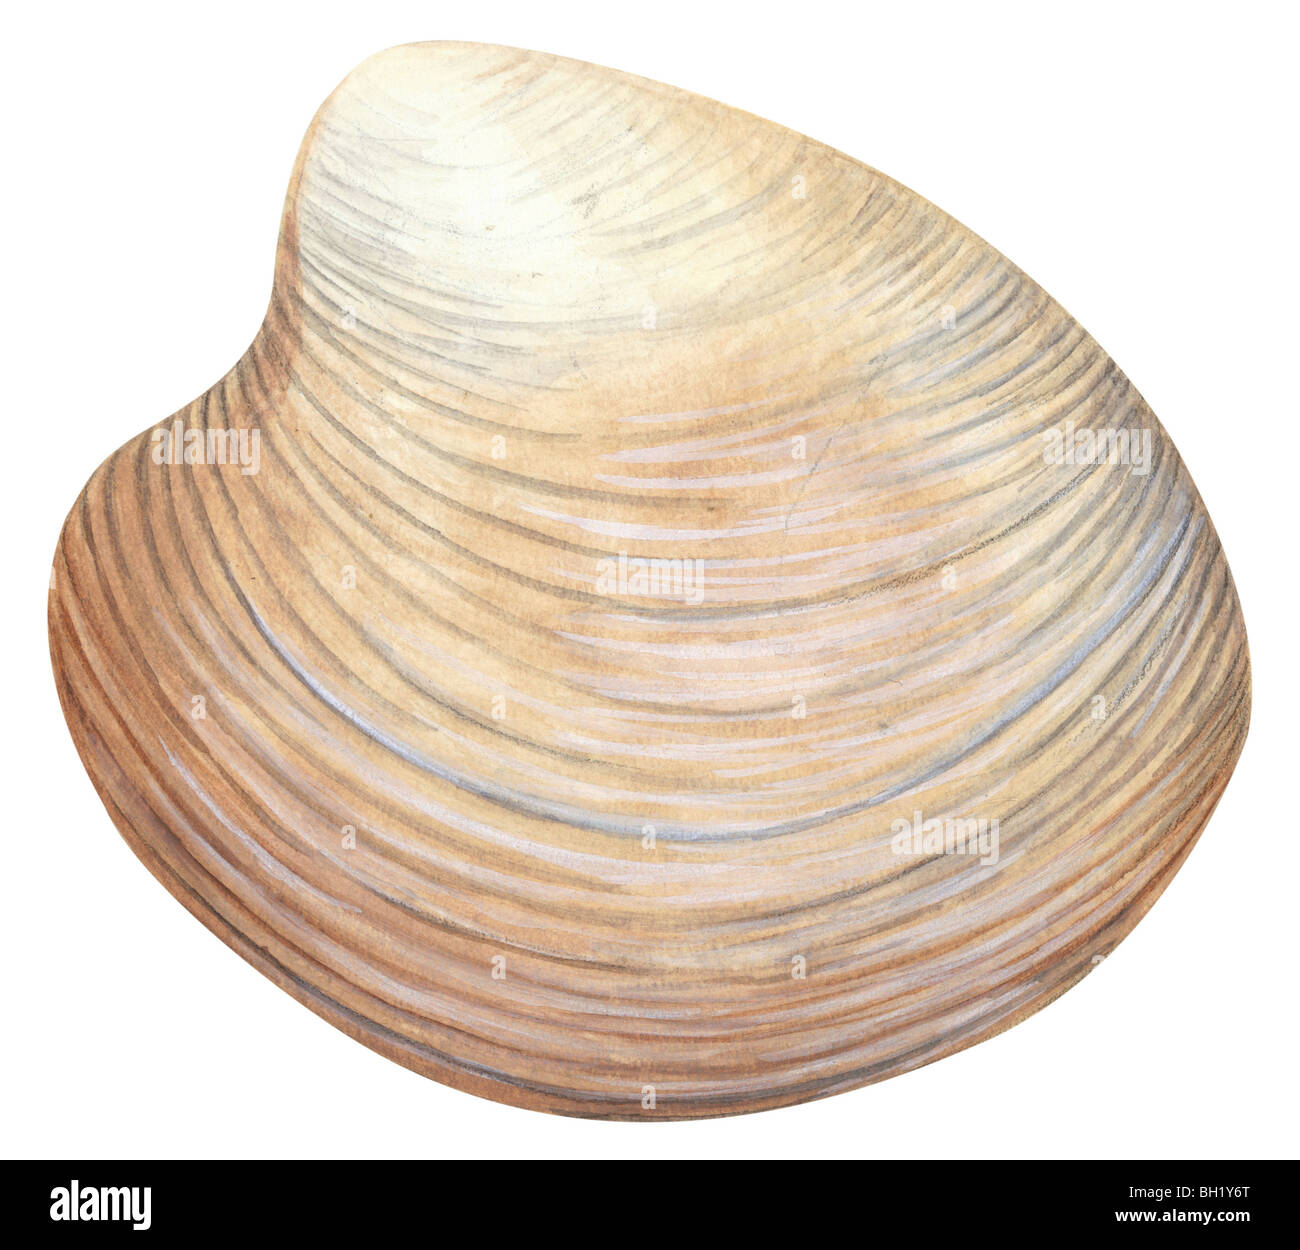 Hard-shell clam Stock Photo